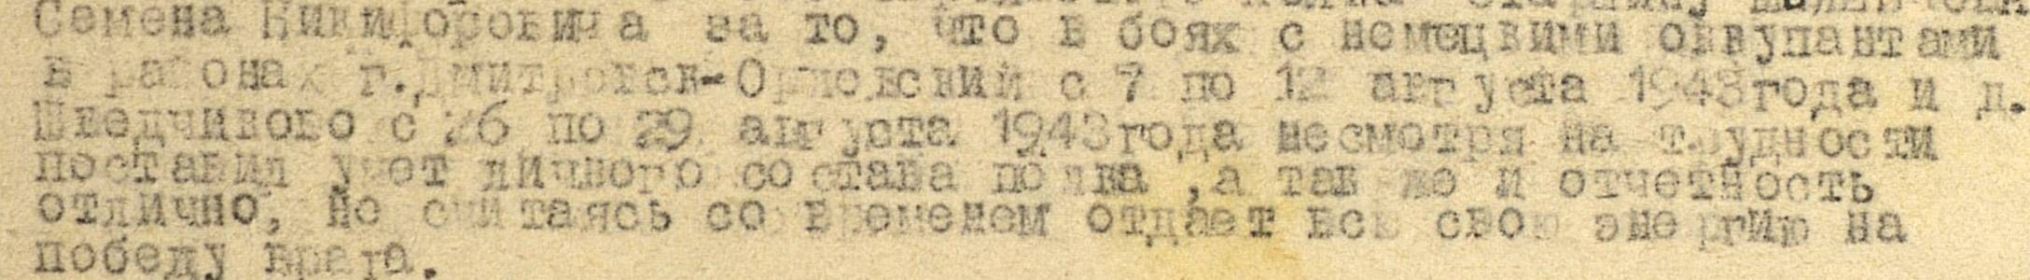 other-soldiers-files/shilenkovs.n.1913g._podvig._za_boevye_zaslugi.jpg